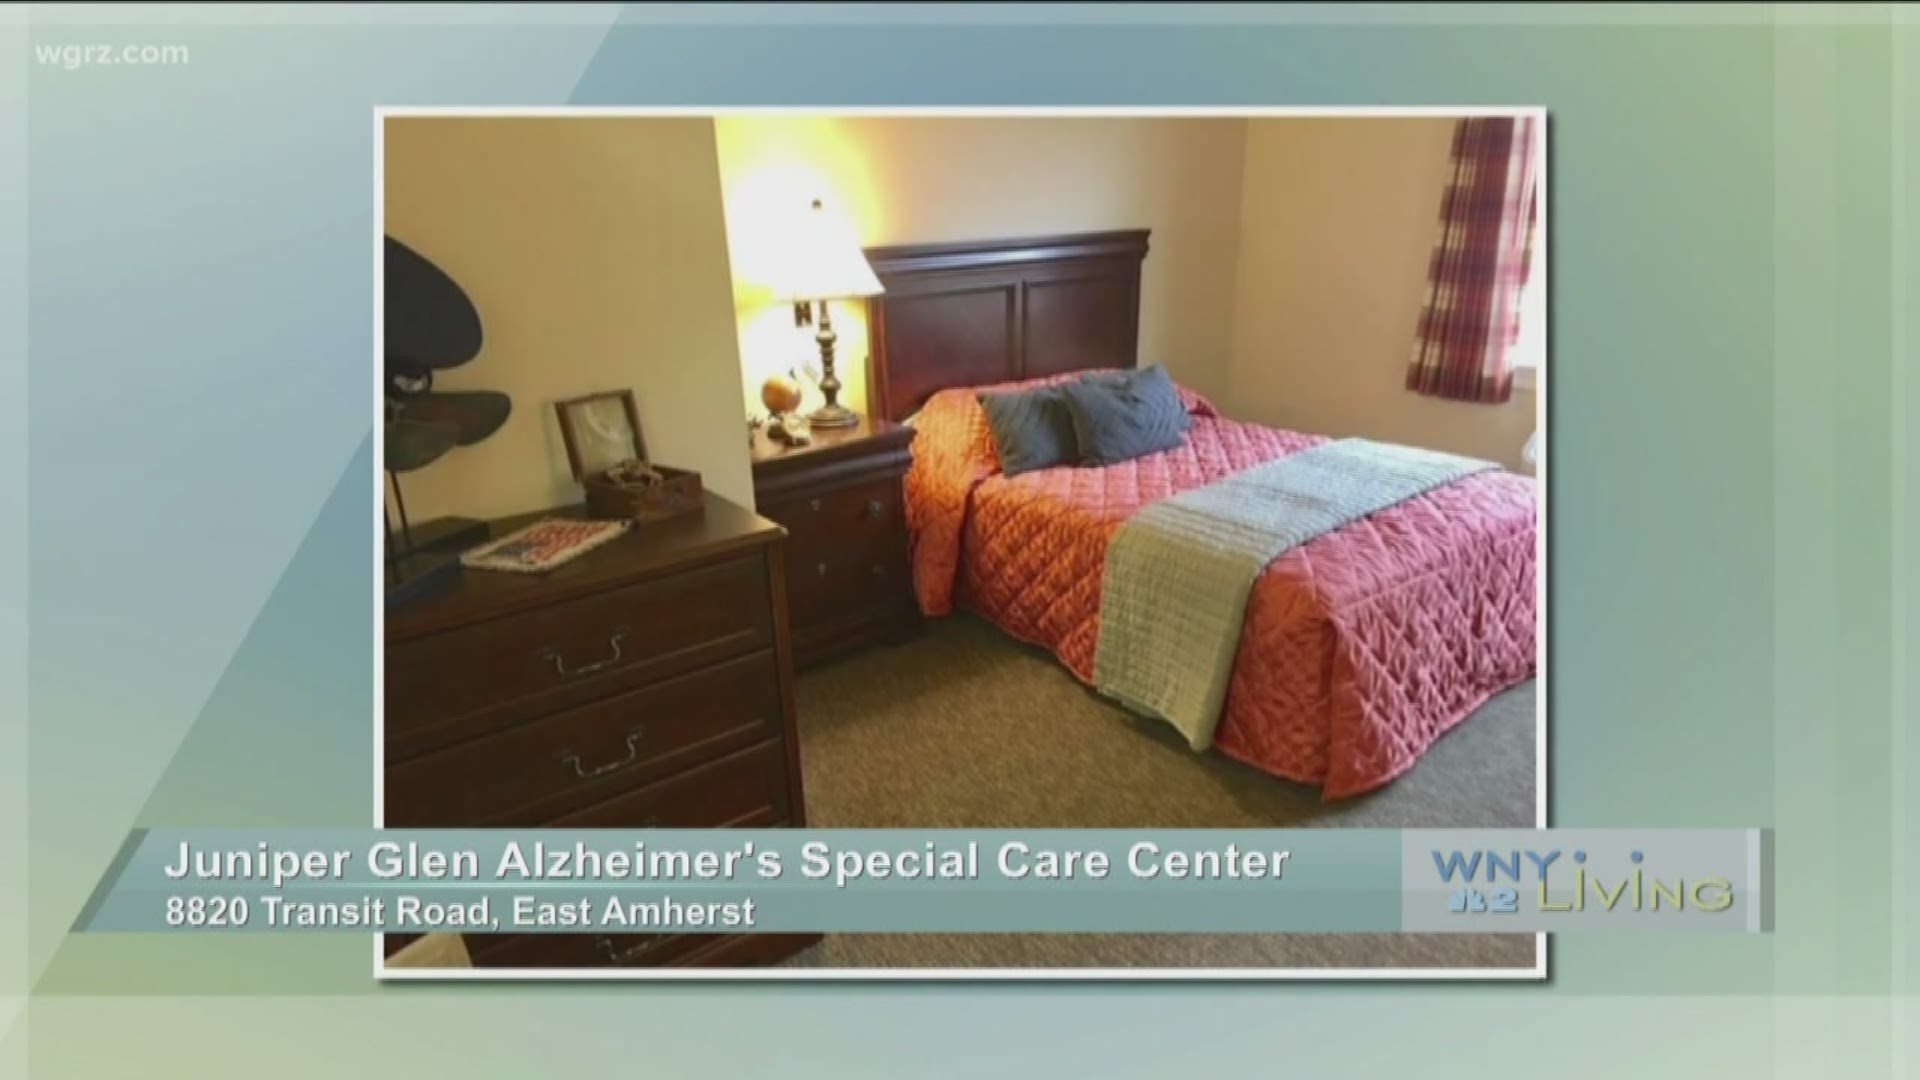 November 16 - Juniper Glen Alzheimer’s Special Care Center (THIS VIDEO IS SPONSORED BY JUNIPER GLEN ALZHEIMER'S SPECIAL CARE CENTER)